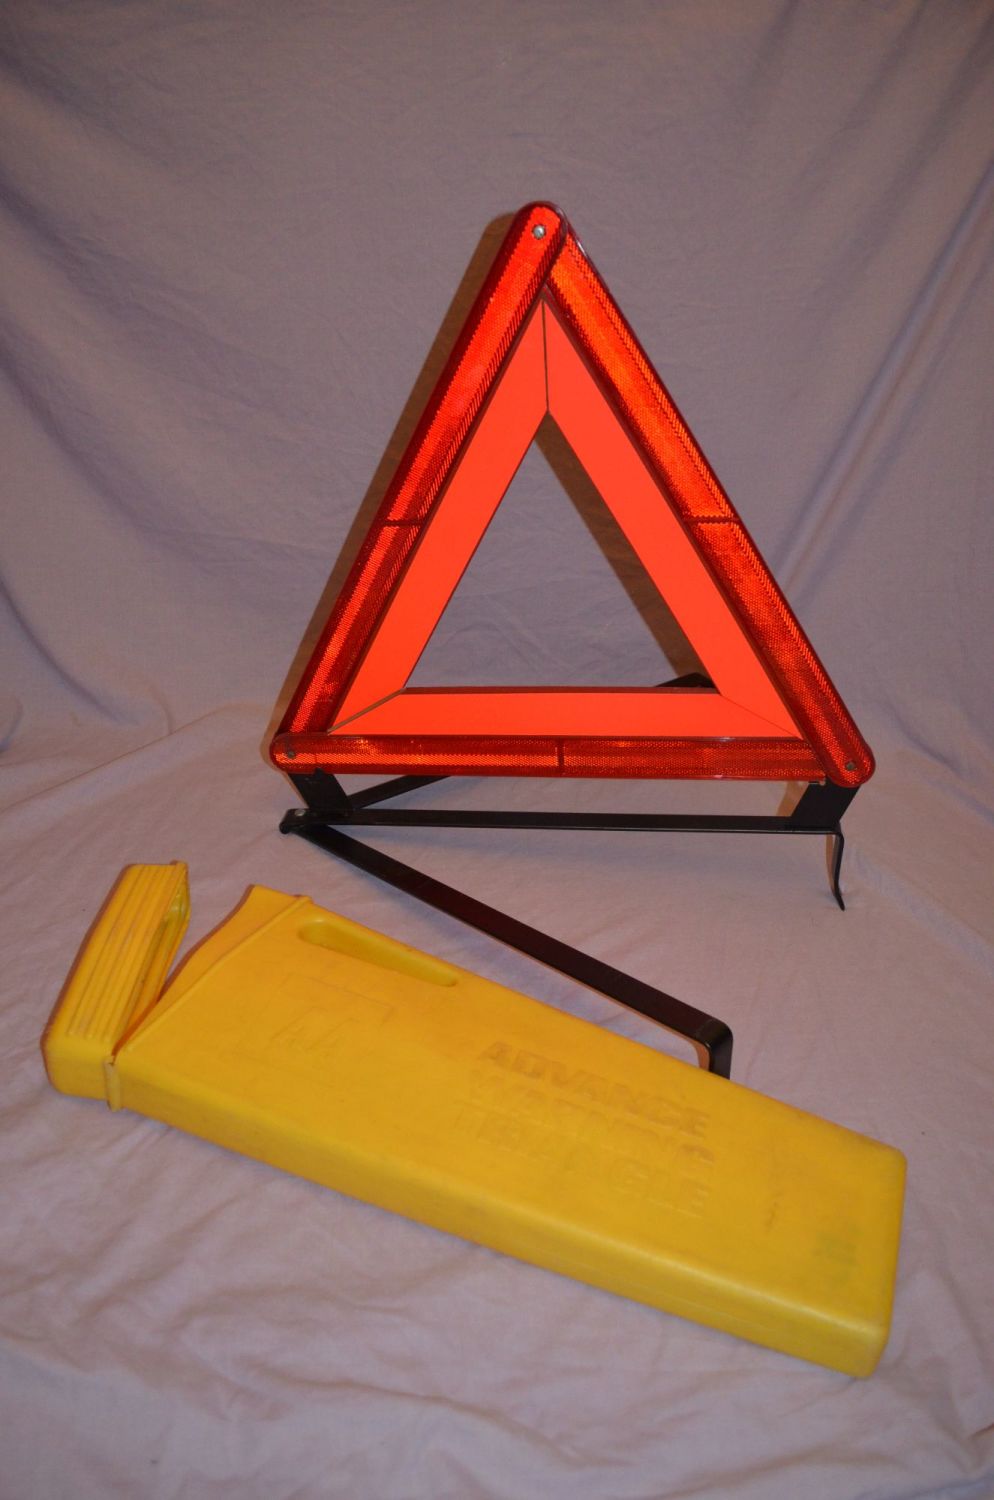 AA Car Advance Warning Triangle.